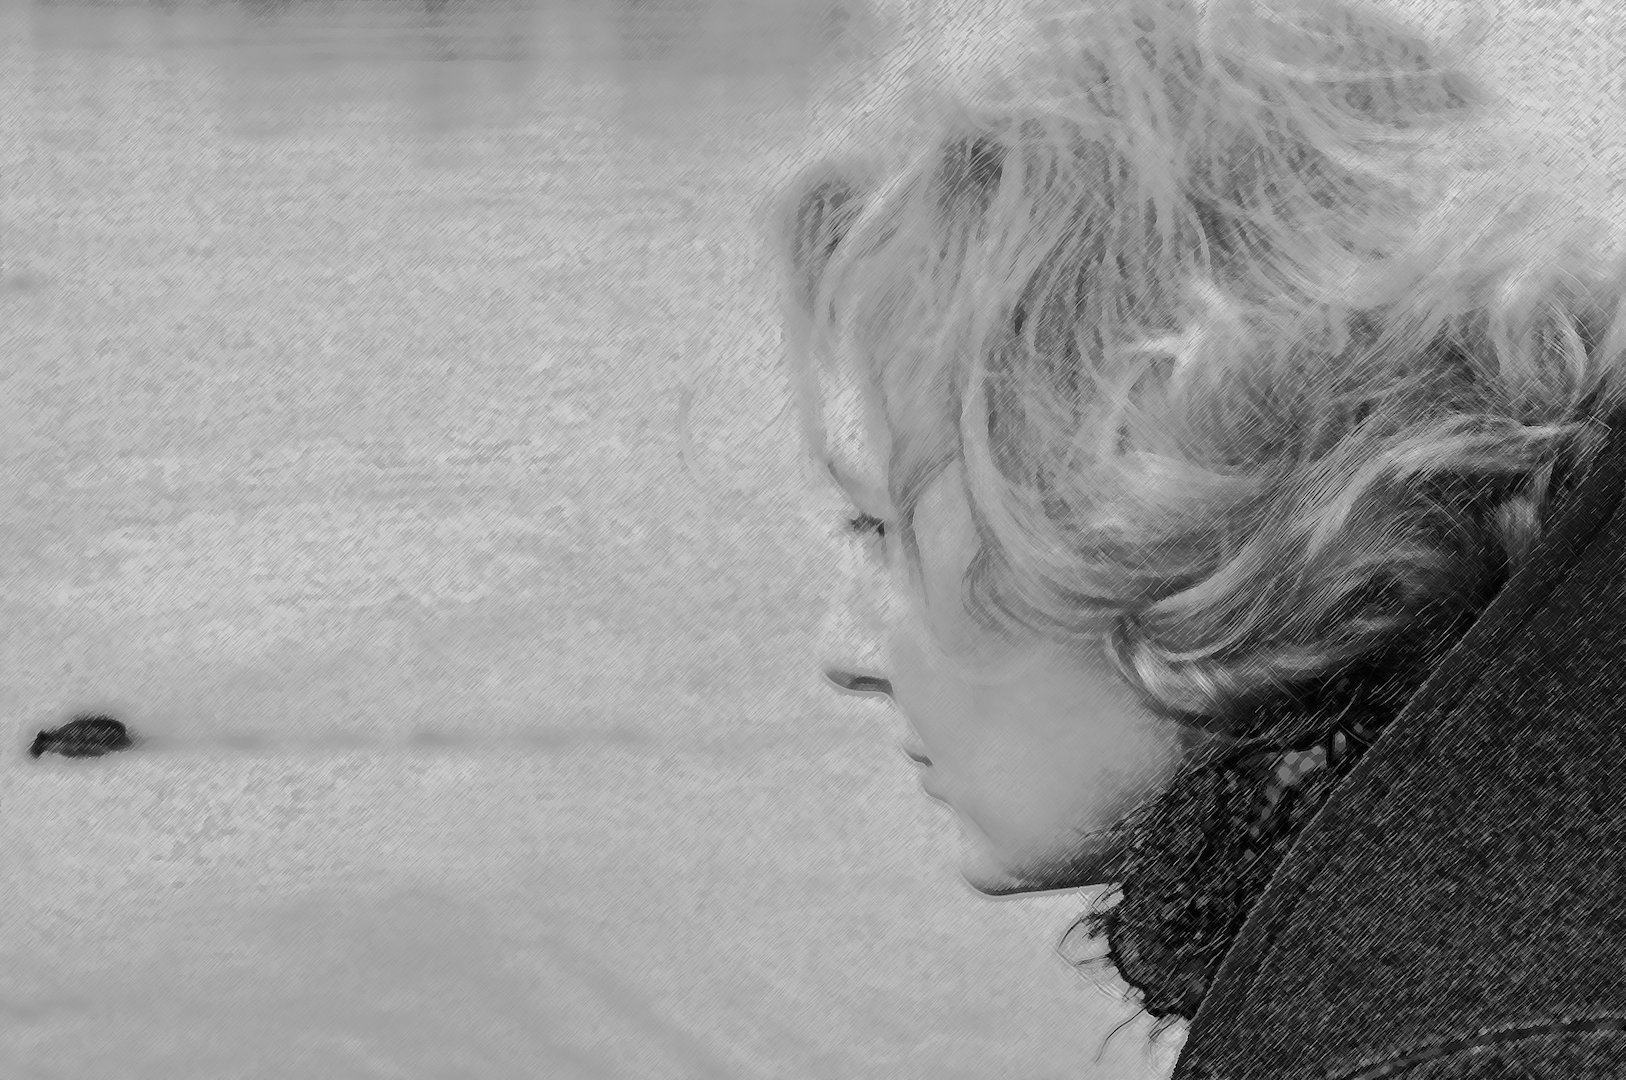 At The Lake V - November Thoughts